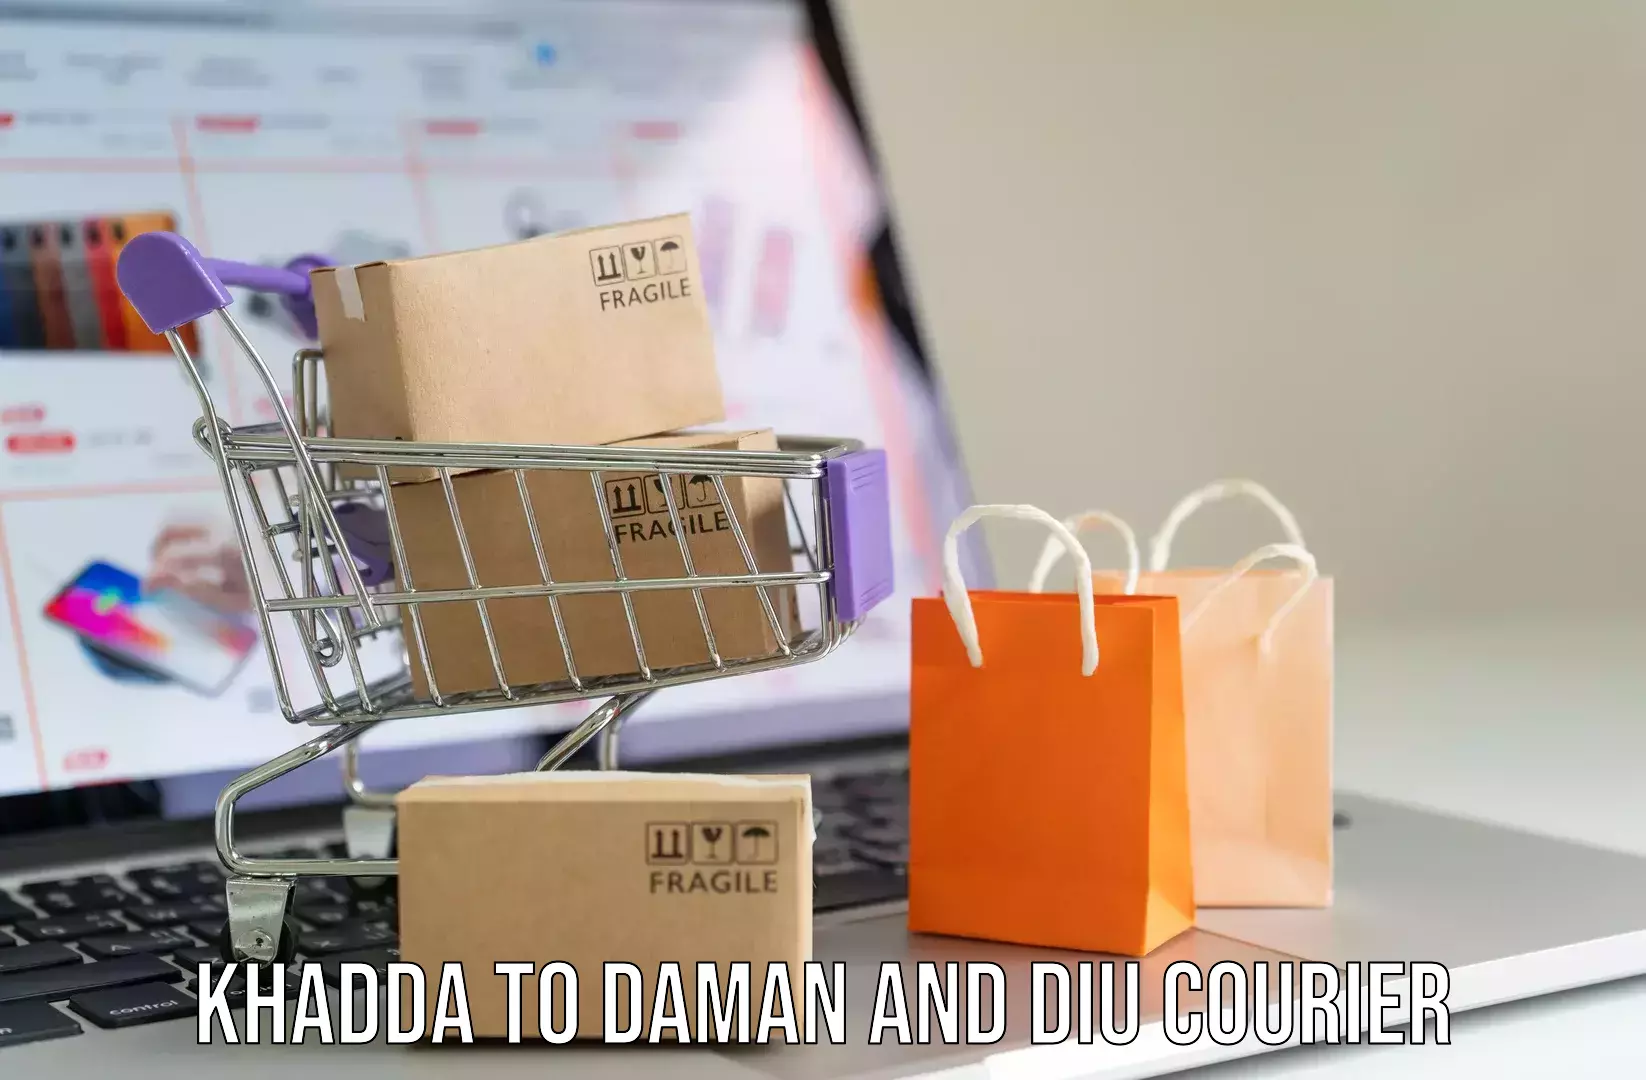 Digital baggage courier Khadda to Daman and Diu